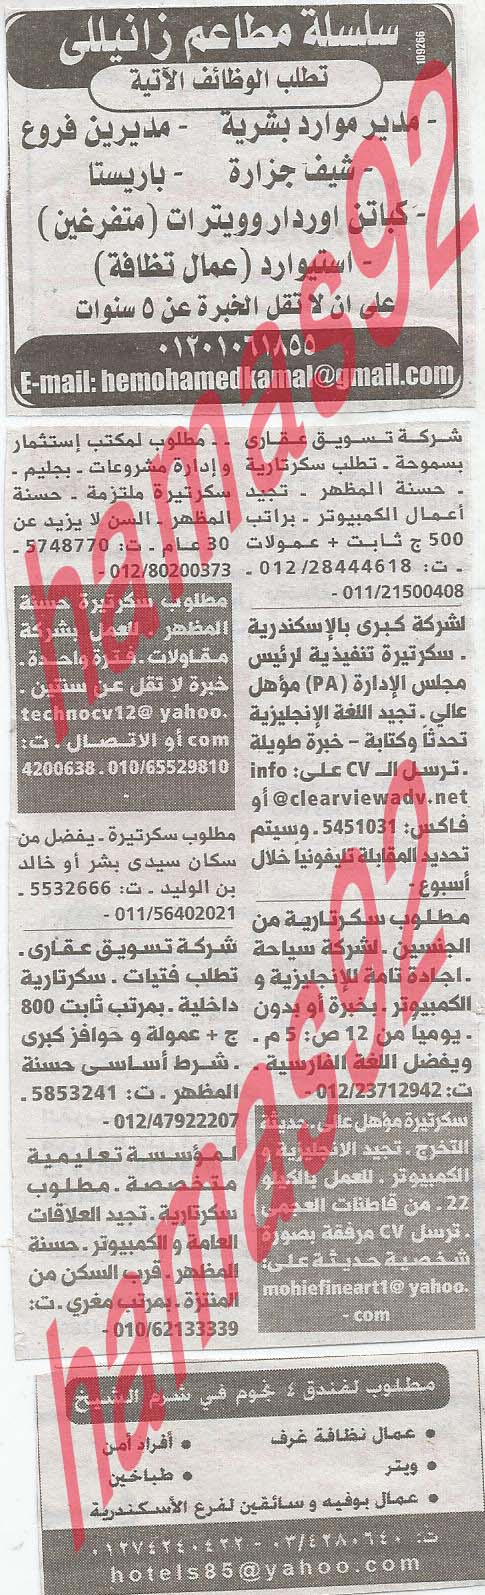 وظائف خالية فى جريدة الوسيط الاسكندرية الثلاثاء 23-04-2013 %D9%88+%D8%B3+%D8%B3+5